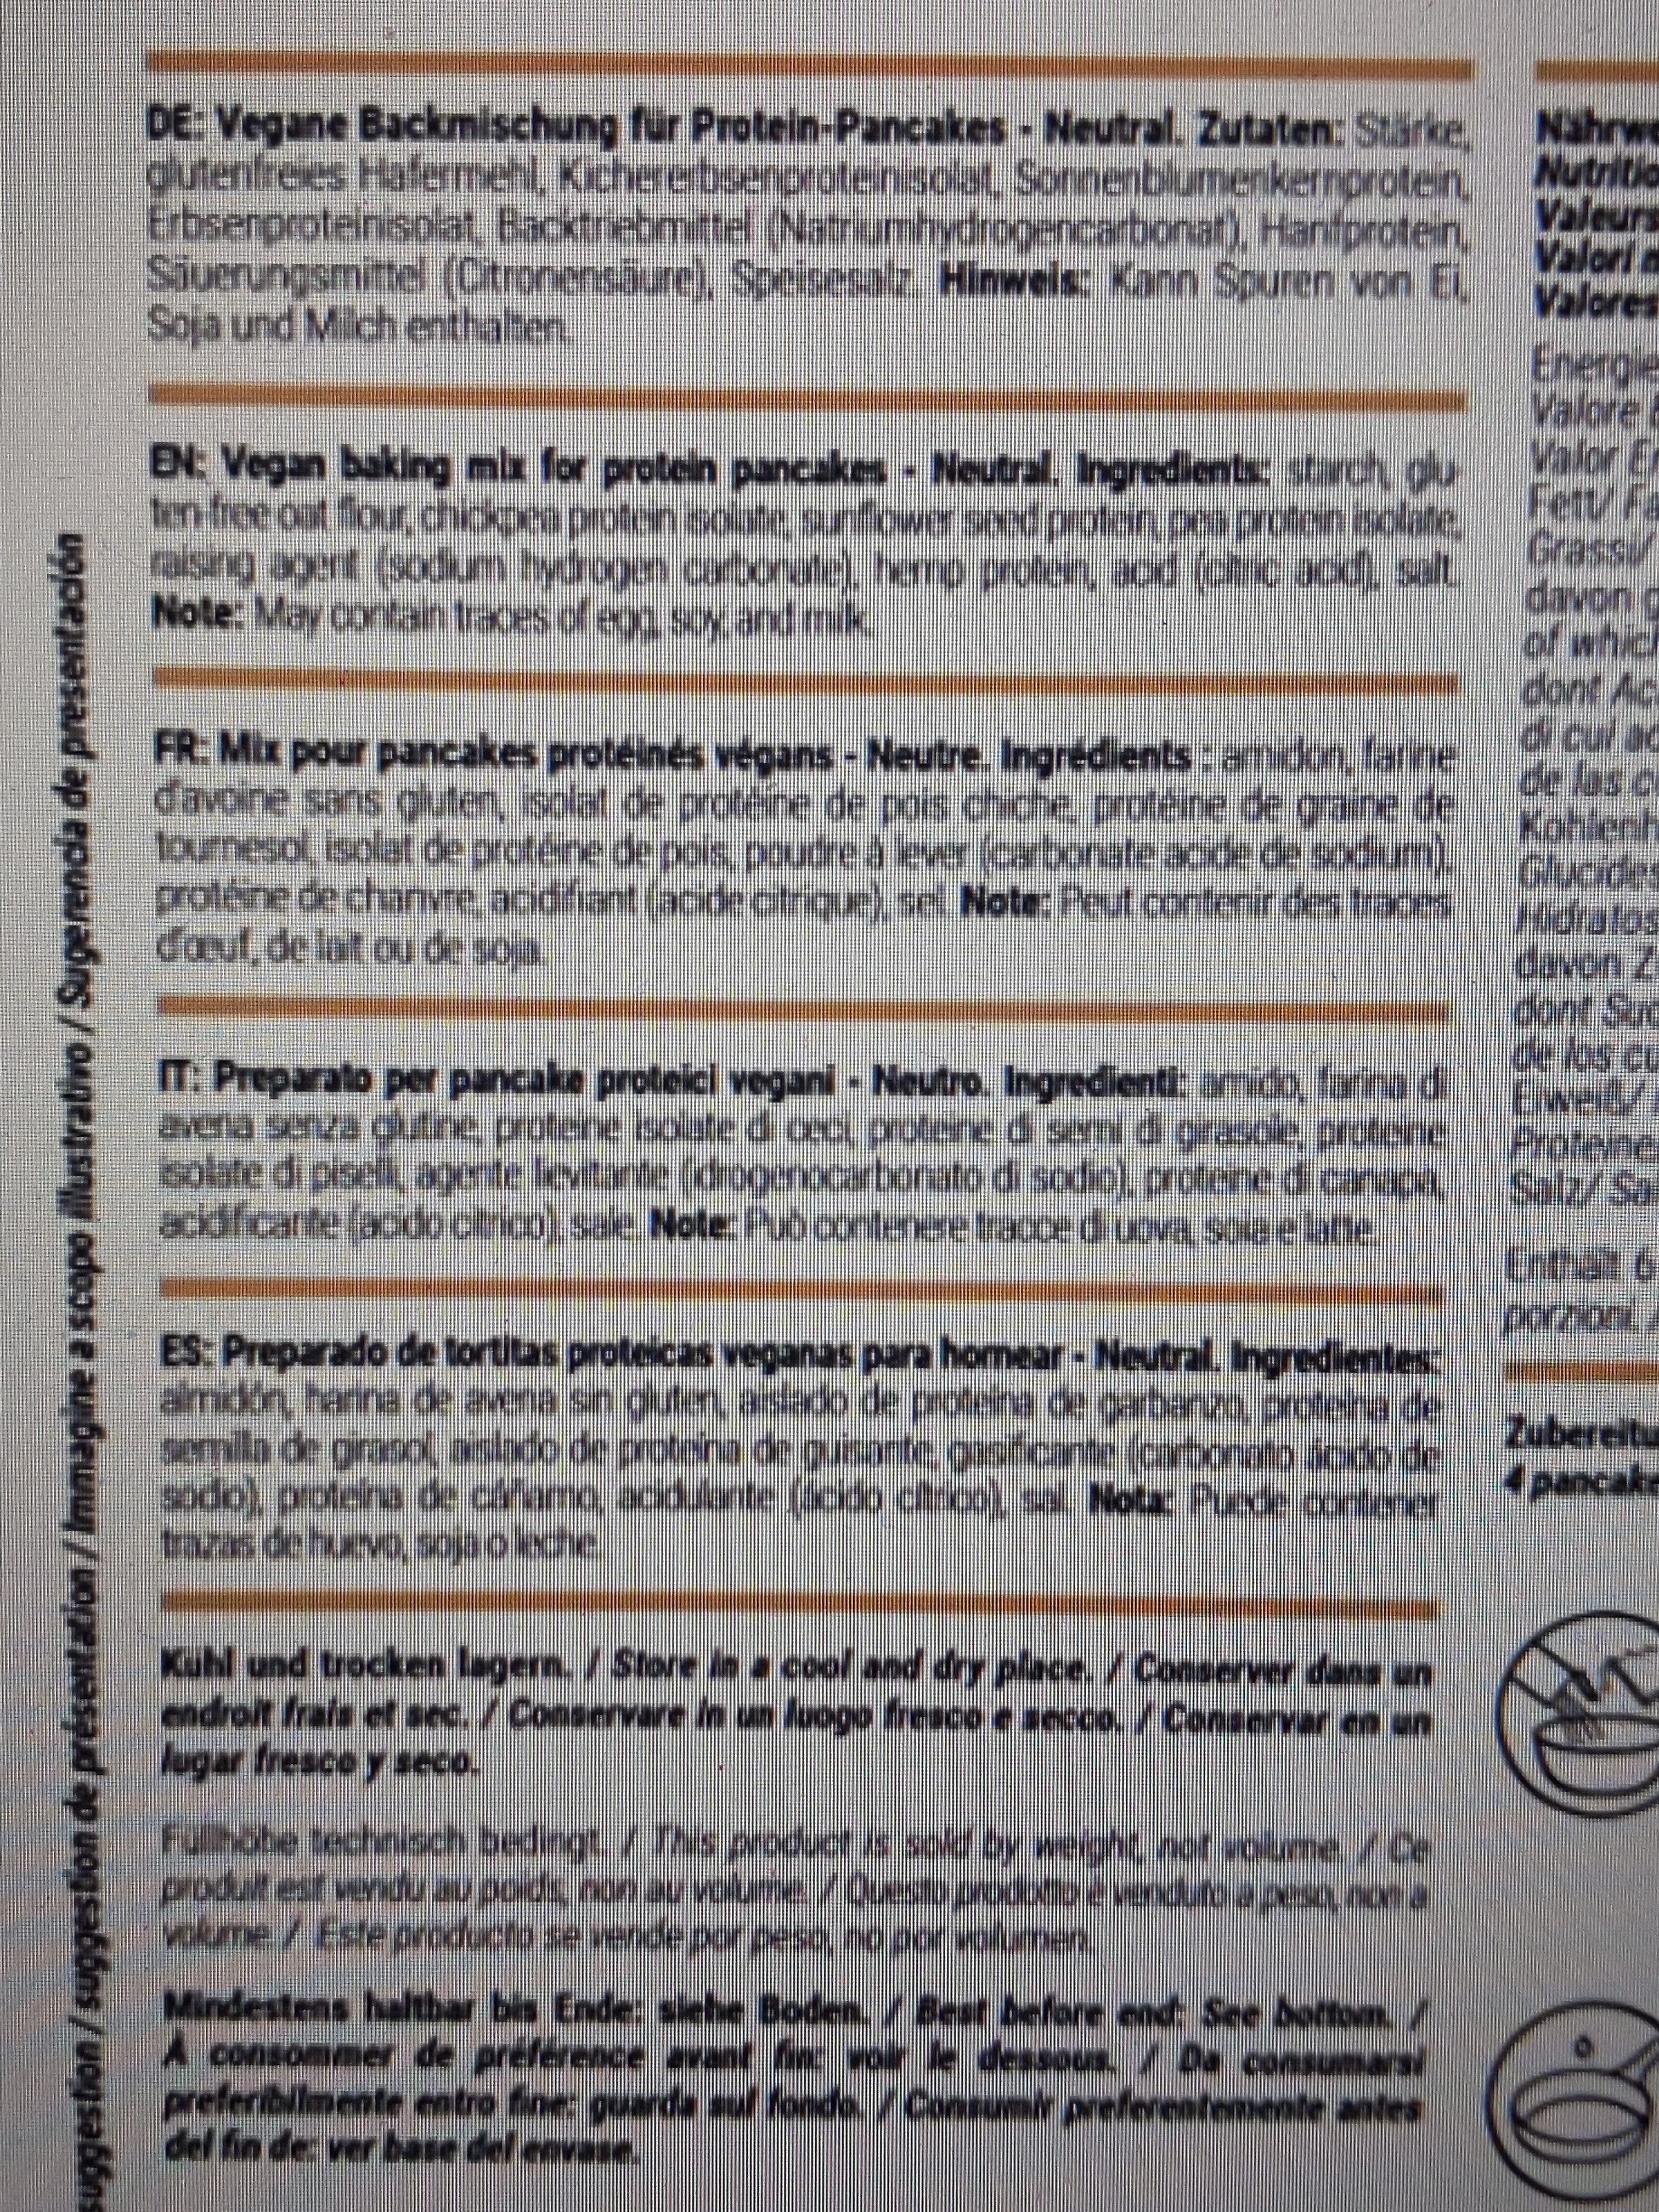 Vegan protein pancakes - Ingredientes - fr